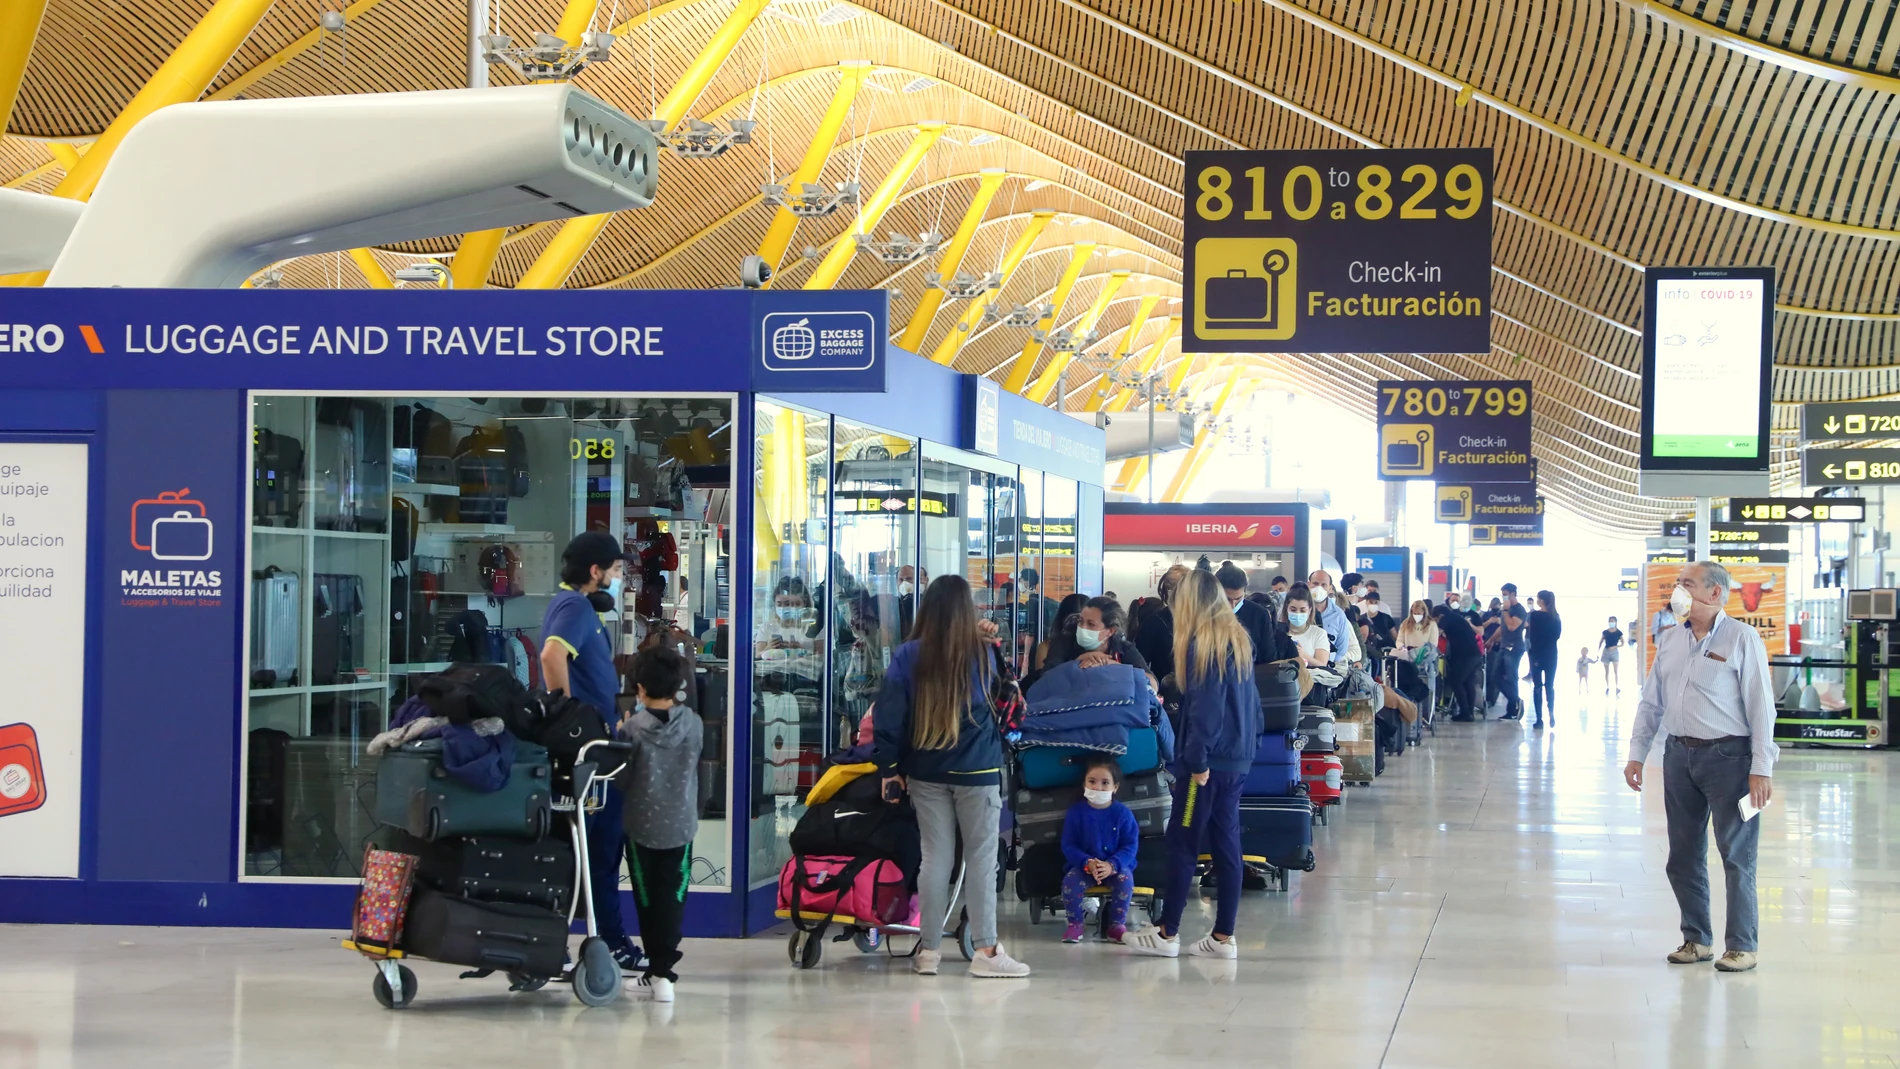 Primer día de llegada de vuelos internacionales con turistas tras finalizar el estado de alarma. Aeropuerto Adolfo Suárez Madrid Barajas